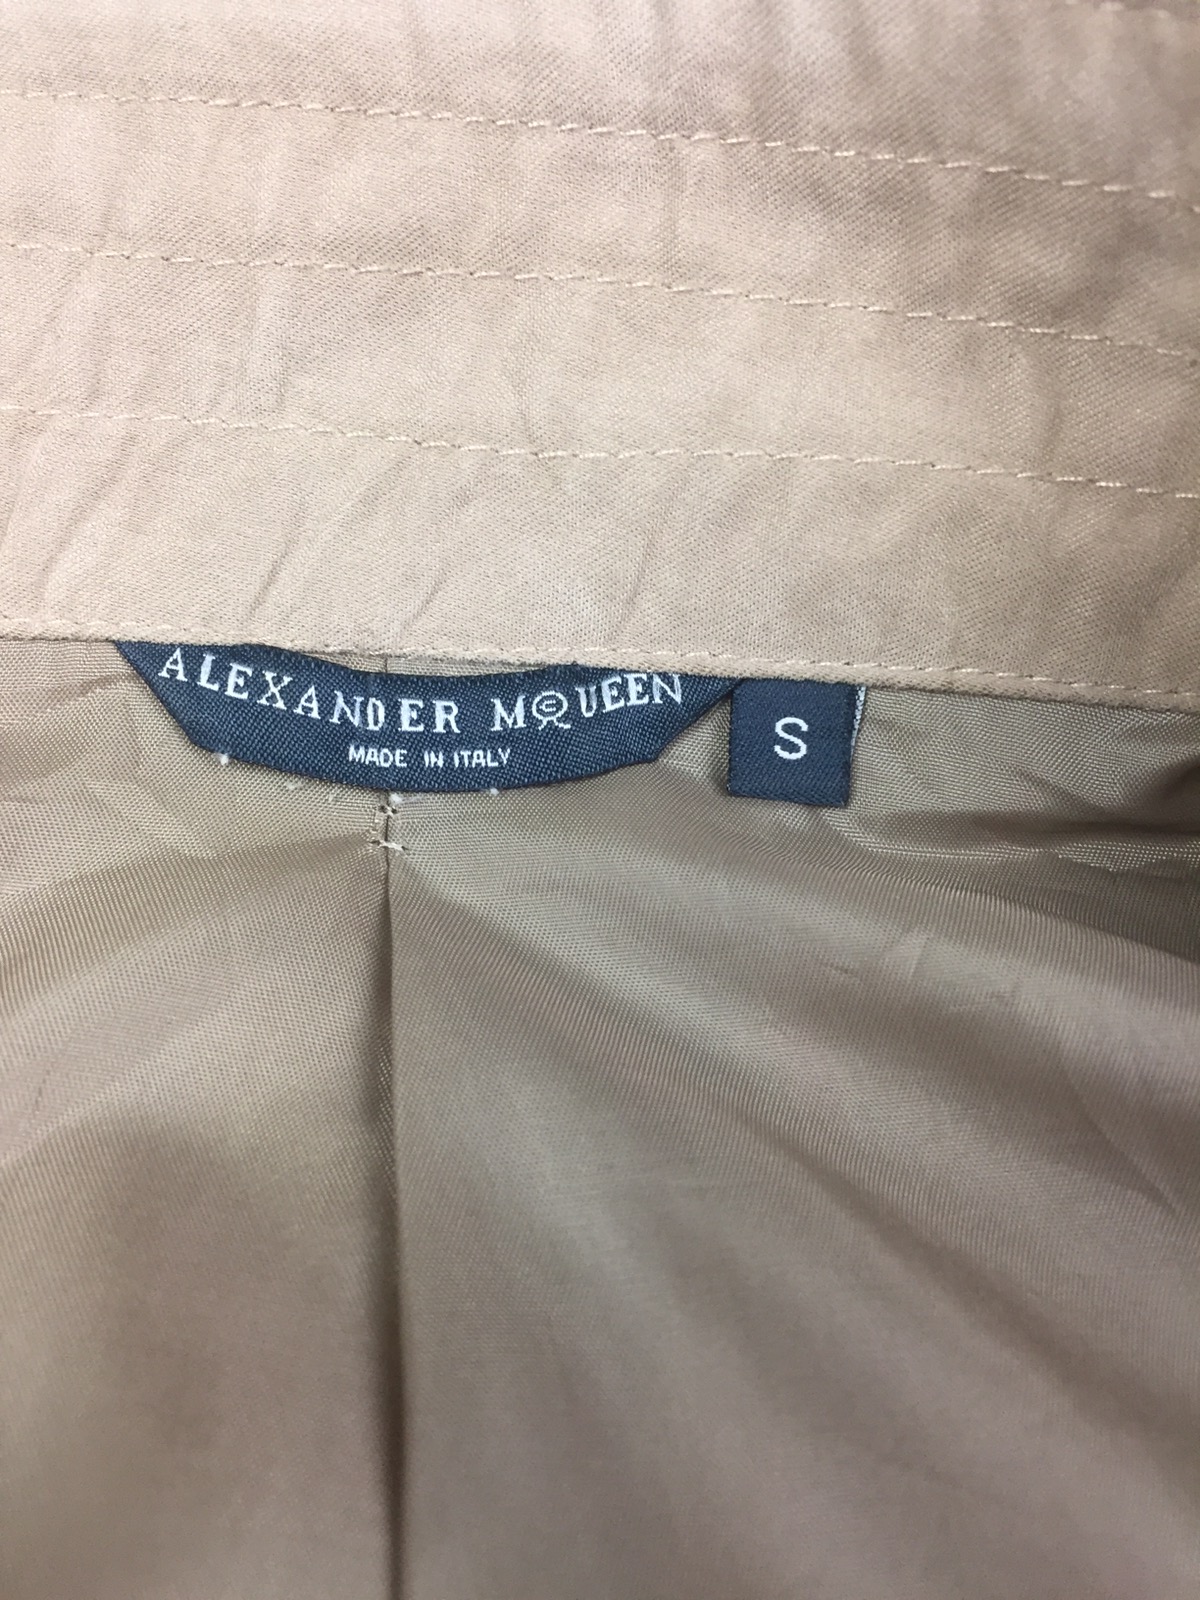 Alexender McQueen belted short jacket - 8